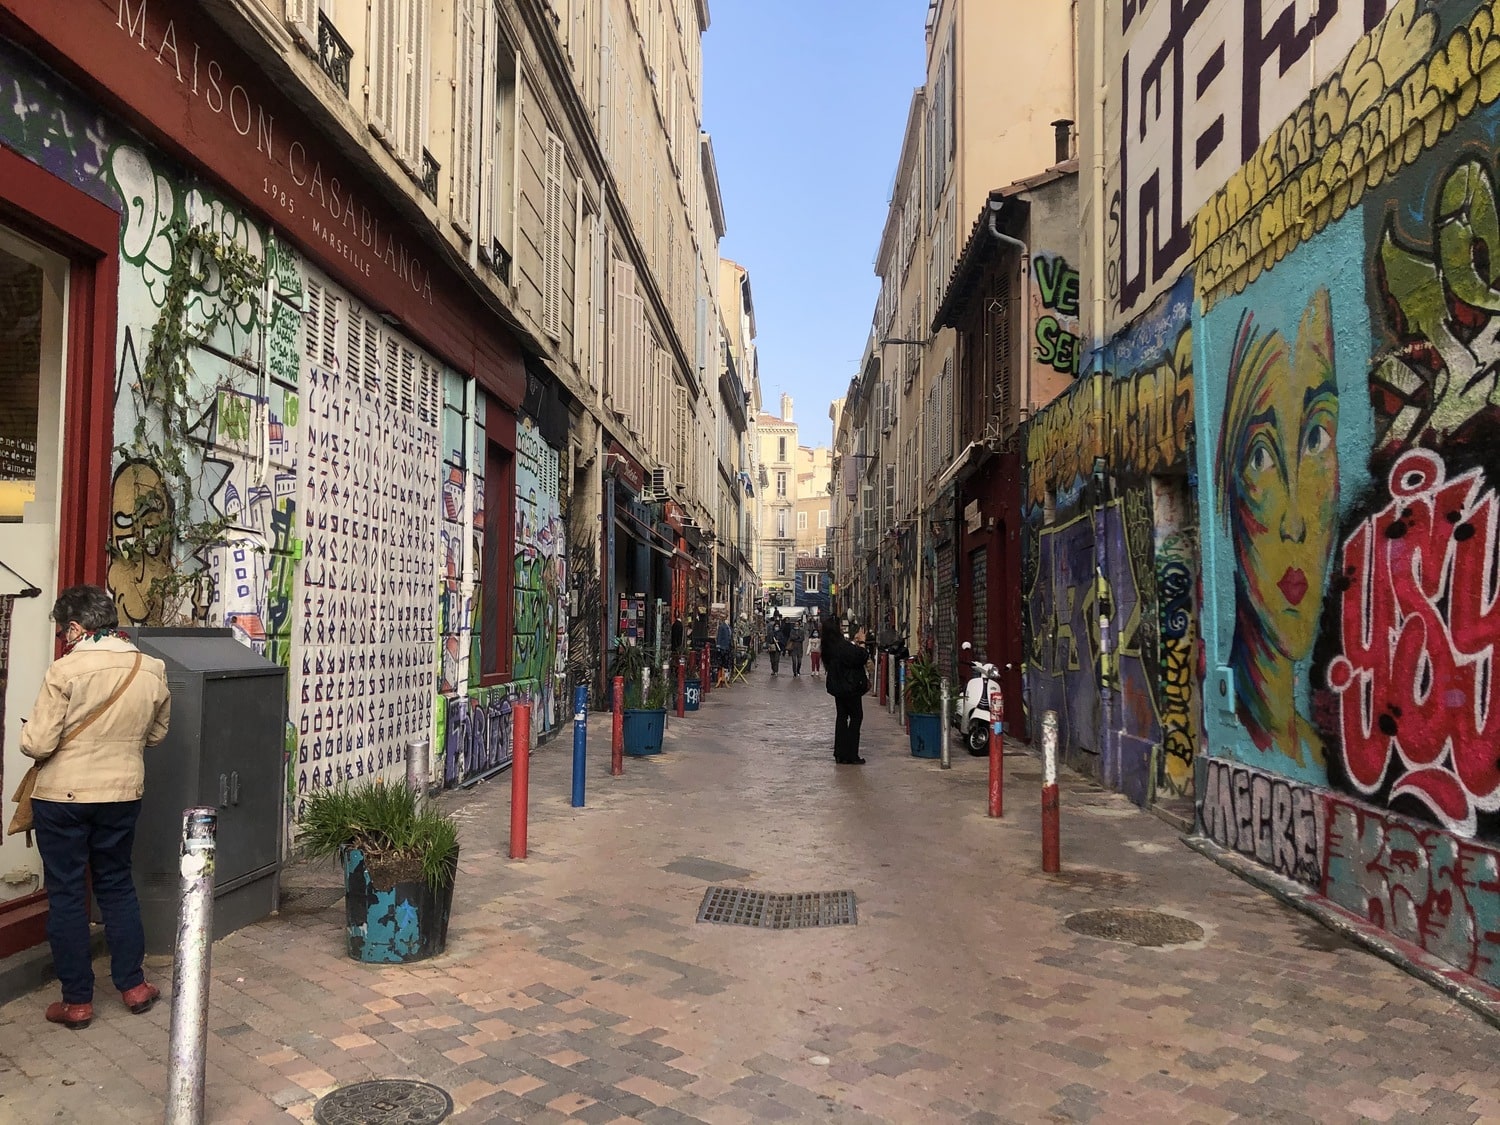 , Vers la piétonnisation des rues entre le Cours Ju et la Plaine cet été ?, Made in Marseille